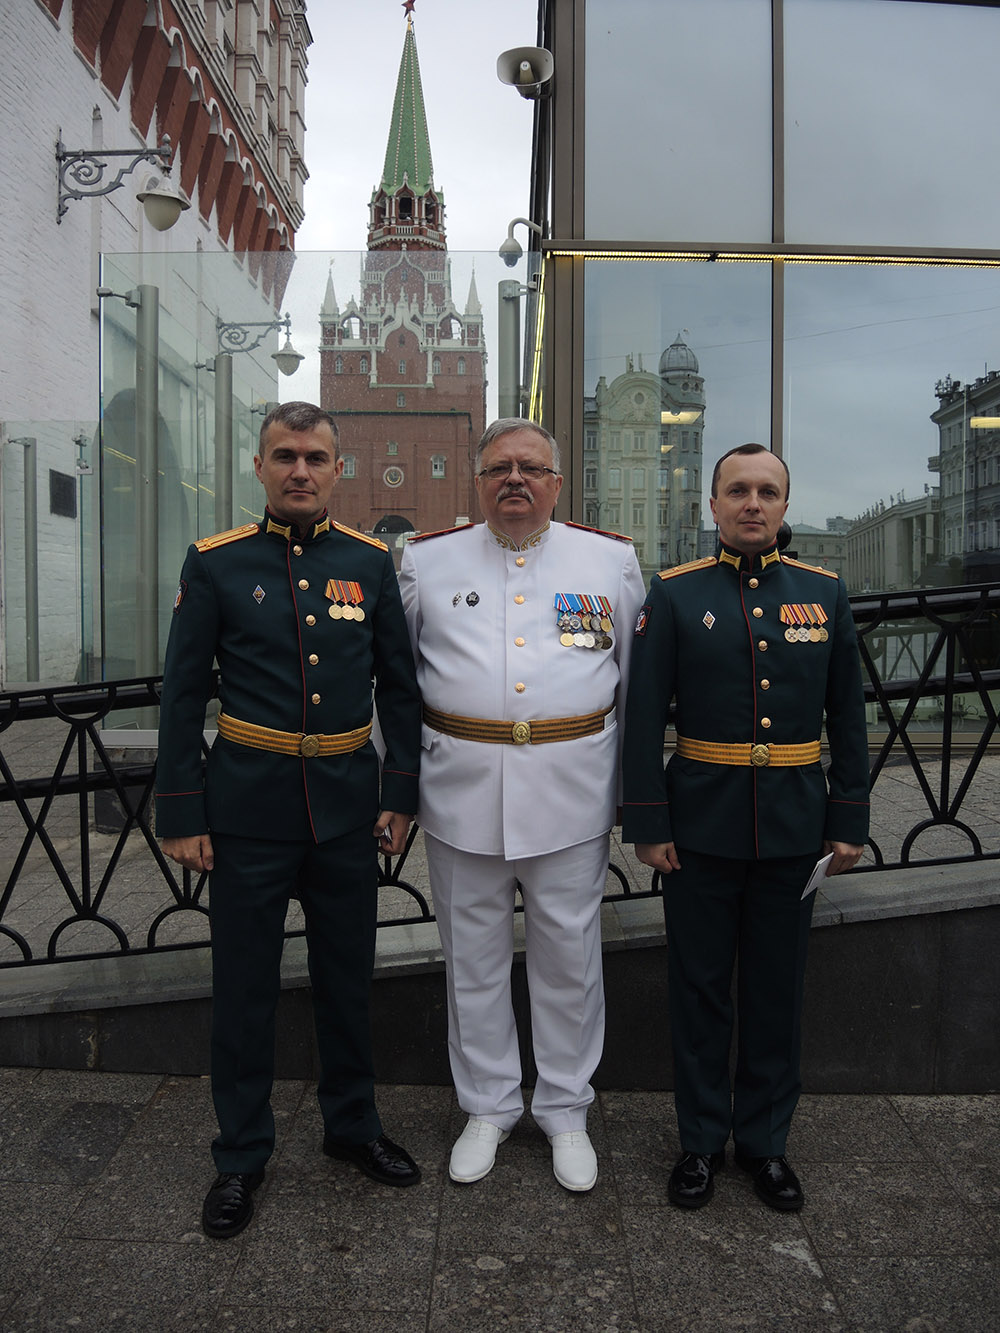 Uchastie-predstavitelej-filiala-v-Bolshom-Kremlyovskom-dvorce-2019-7